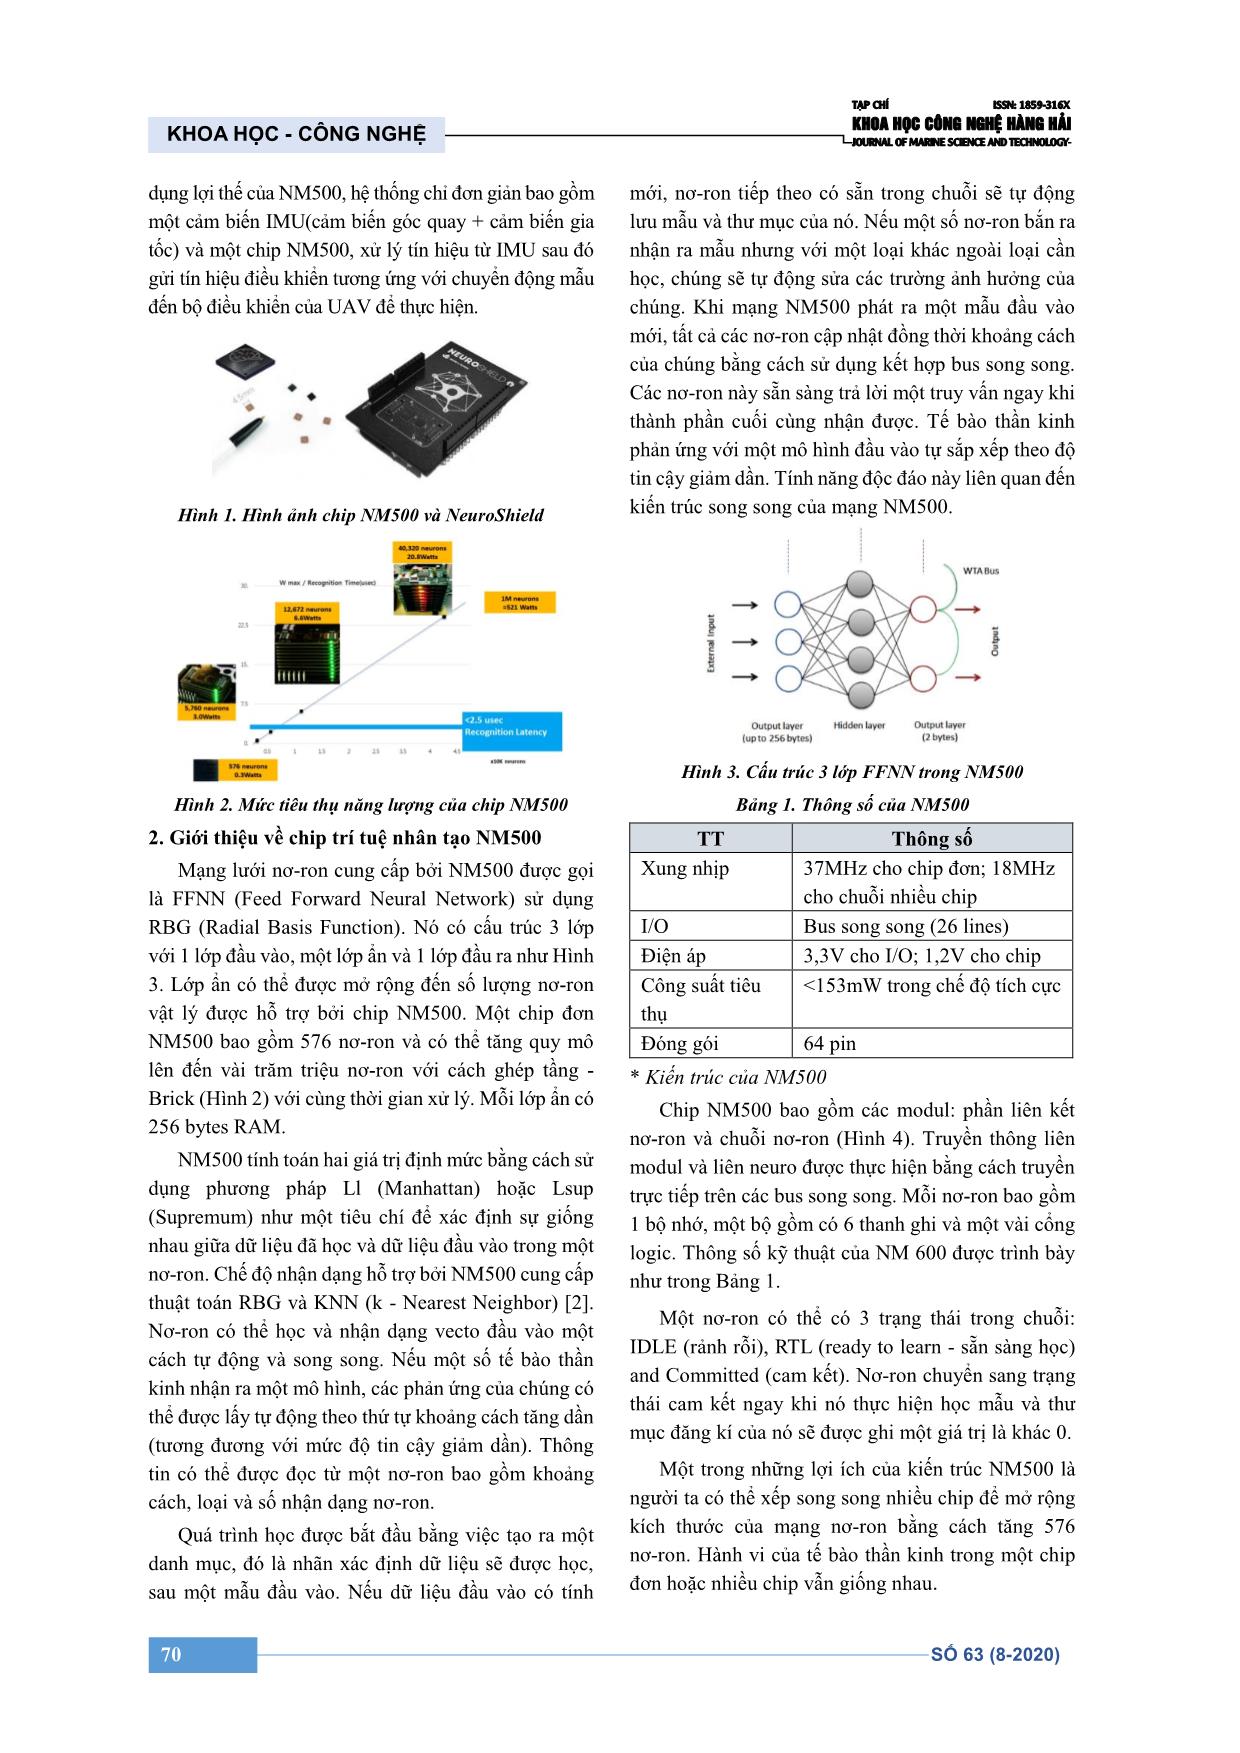 Đề xuất phương pháp điều khiển thiết bị bay không người lái bằng nhận dạng chuyển động sử dụng chip trí tuệ nhân tạo trang 2